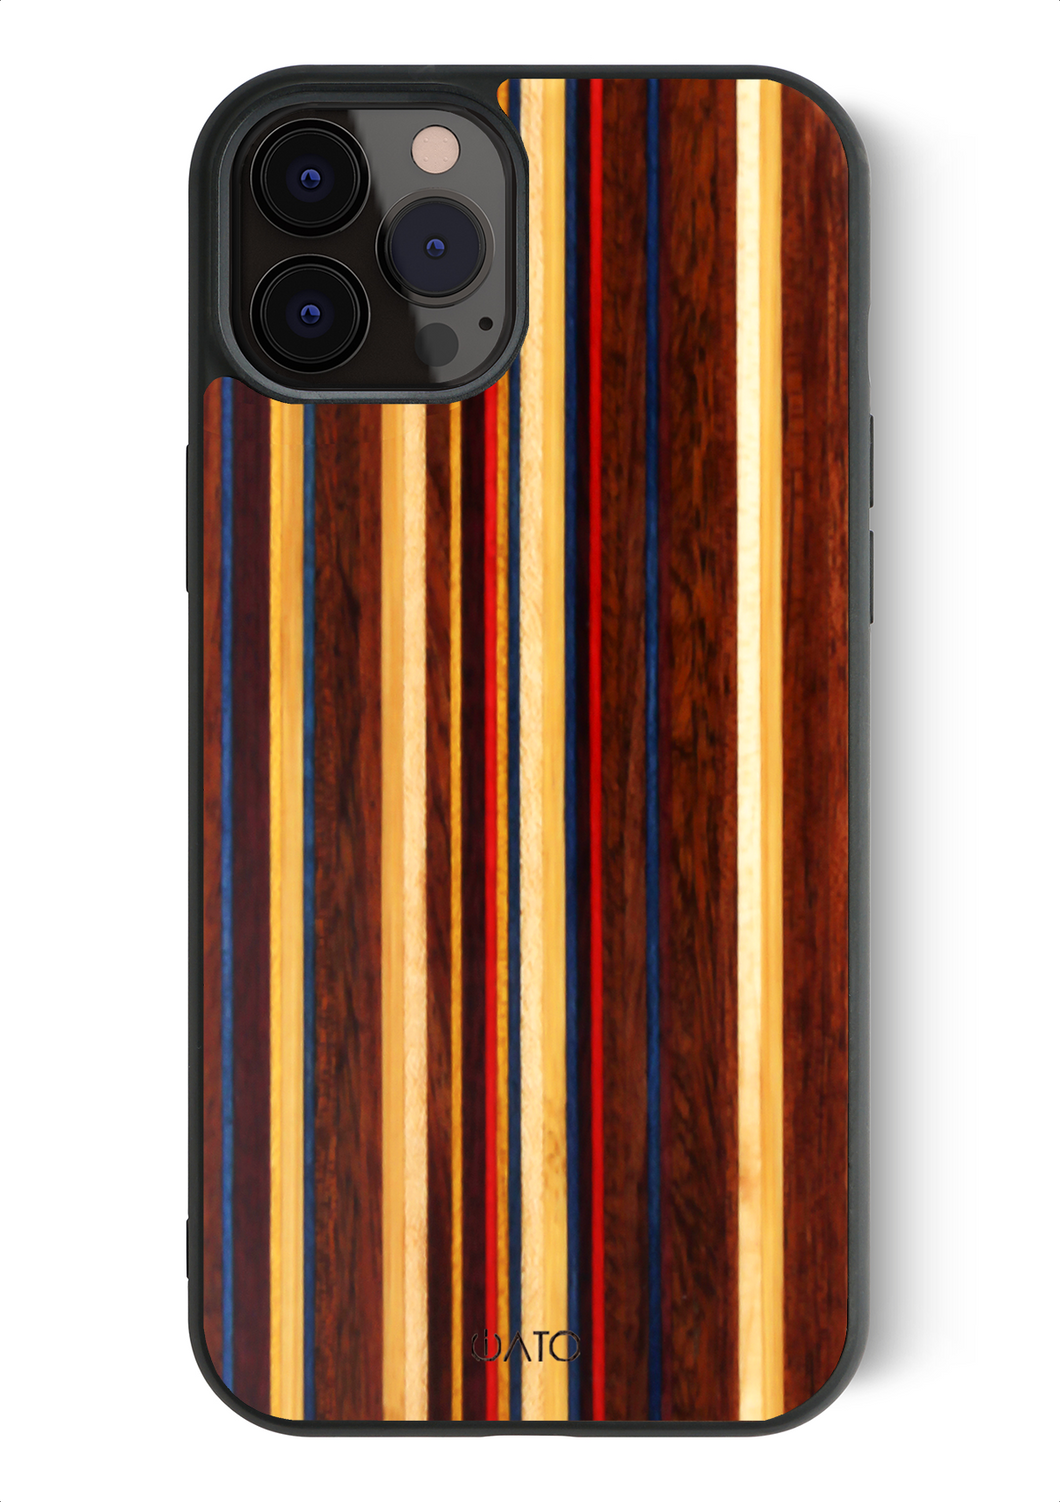 iPhone 11 Pro Max - iATO Skateboard Wood Case - Protective Design. - iATO Awesome